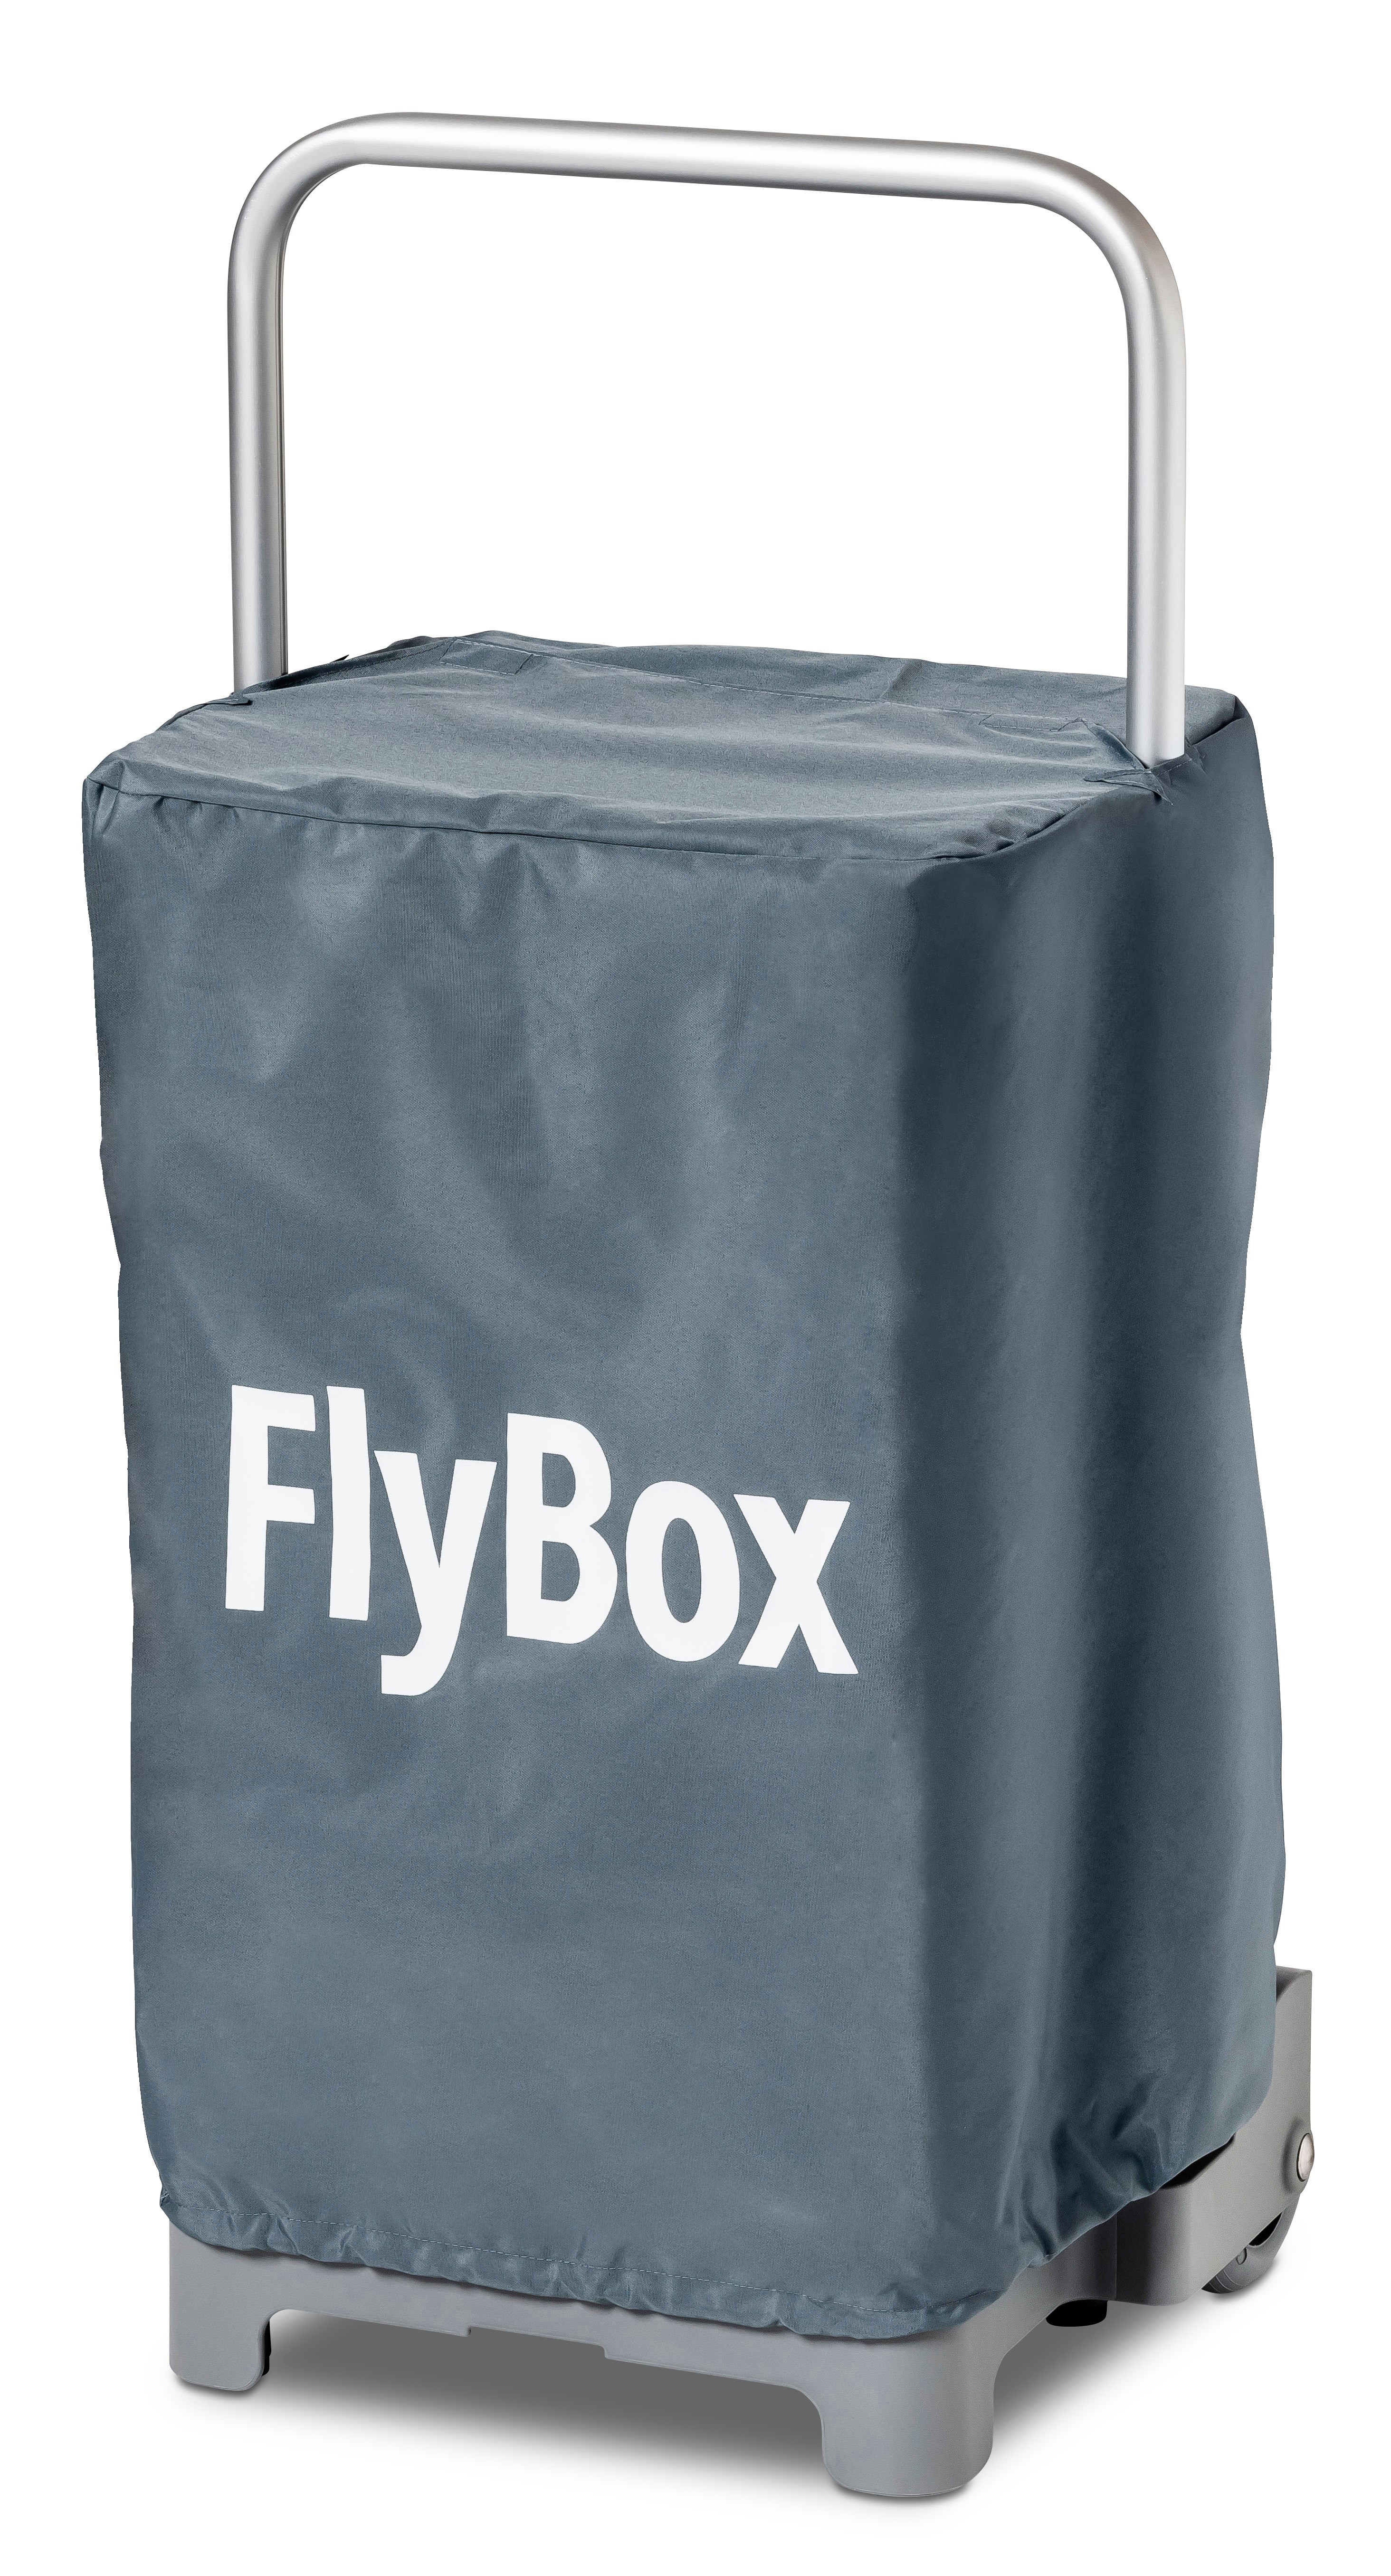 Flybox, Mobil Arbejdsstation, NSK spray